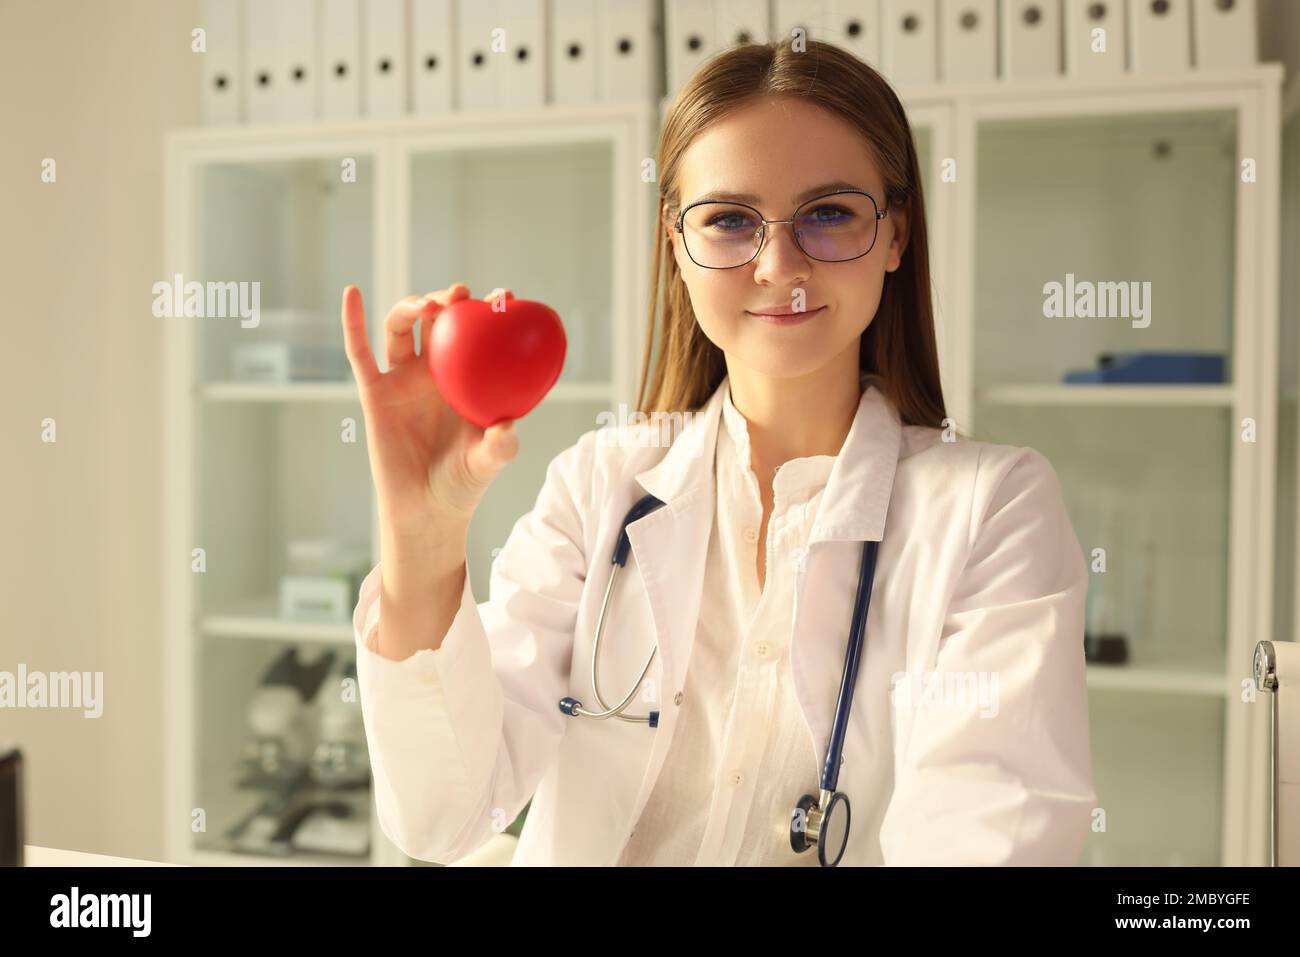 Cardiologo medico che tiene il cuore rosso giocattolo in clinica Foto Stock